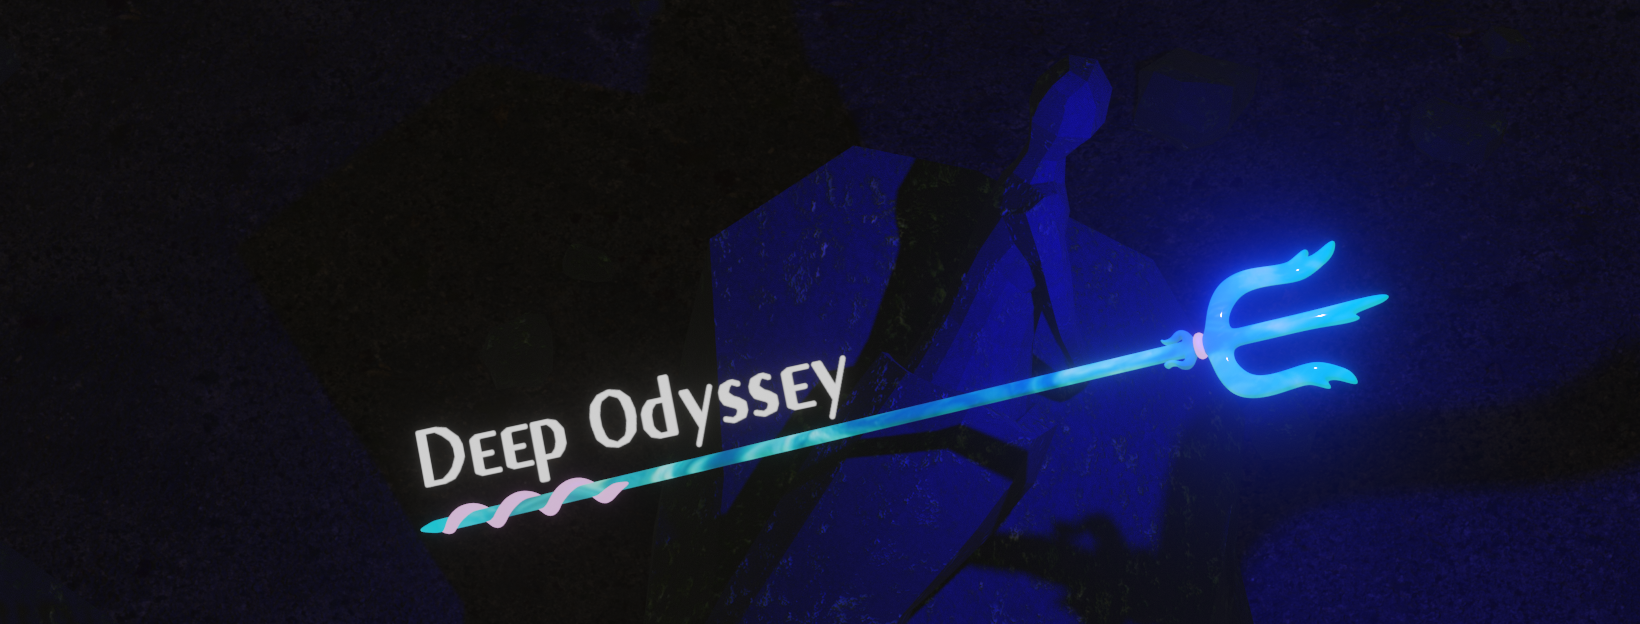 Deep Odyssey